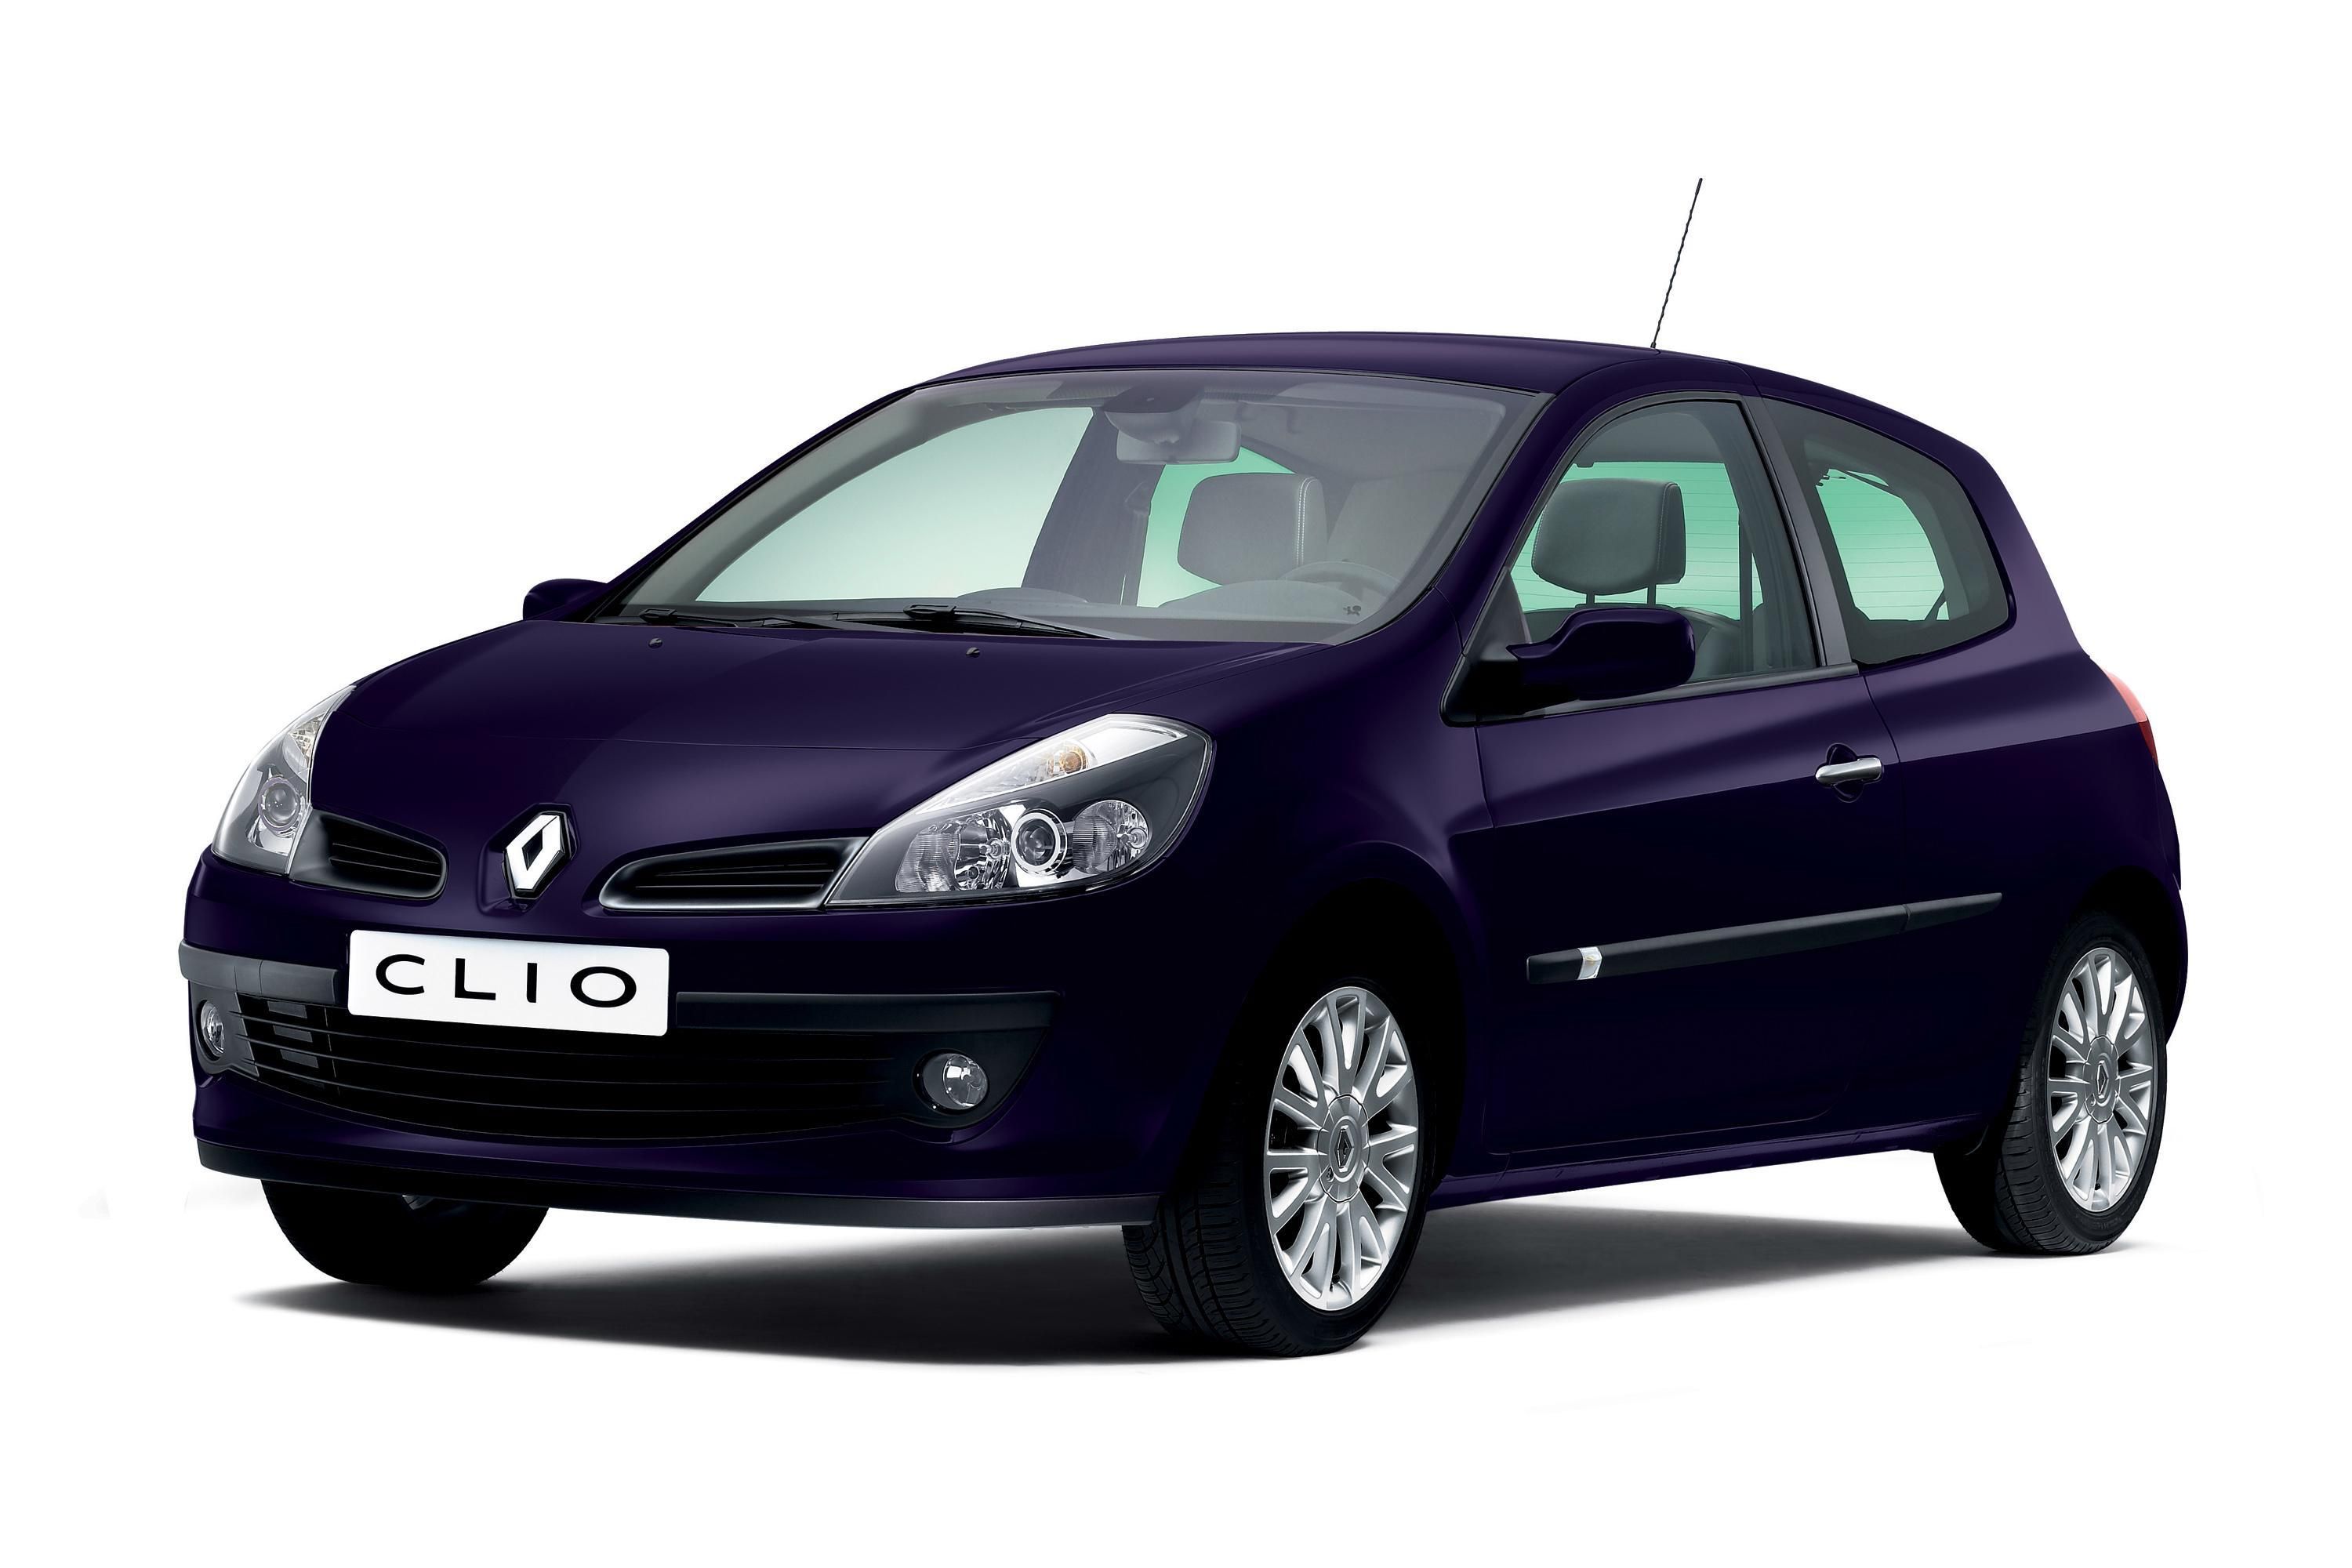 2008 Renault Clio Exception